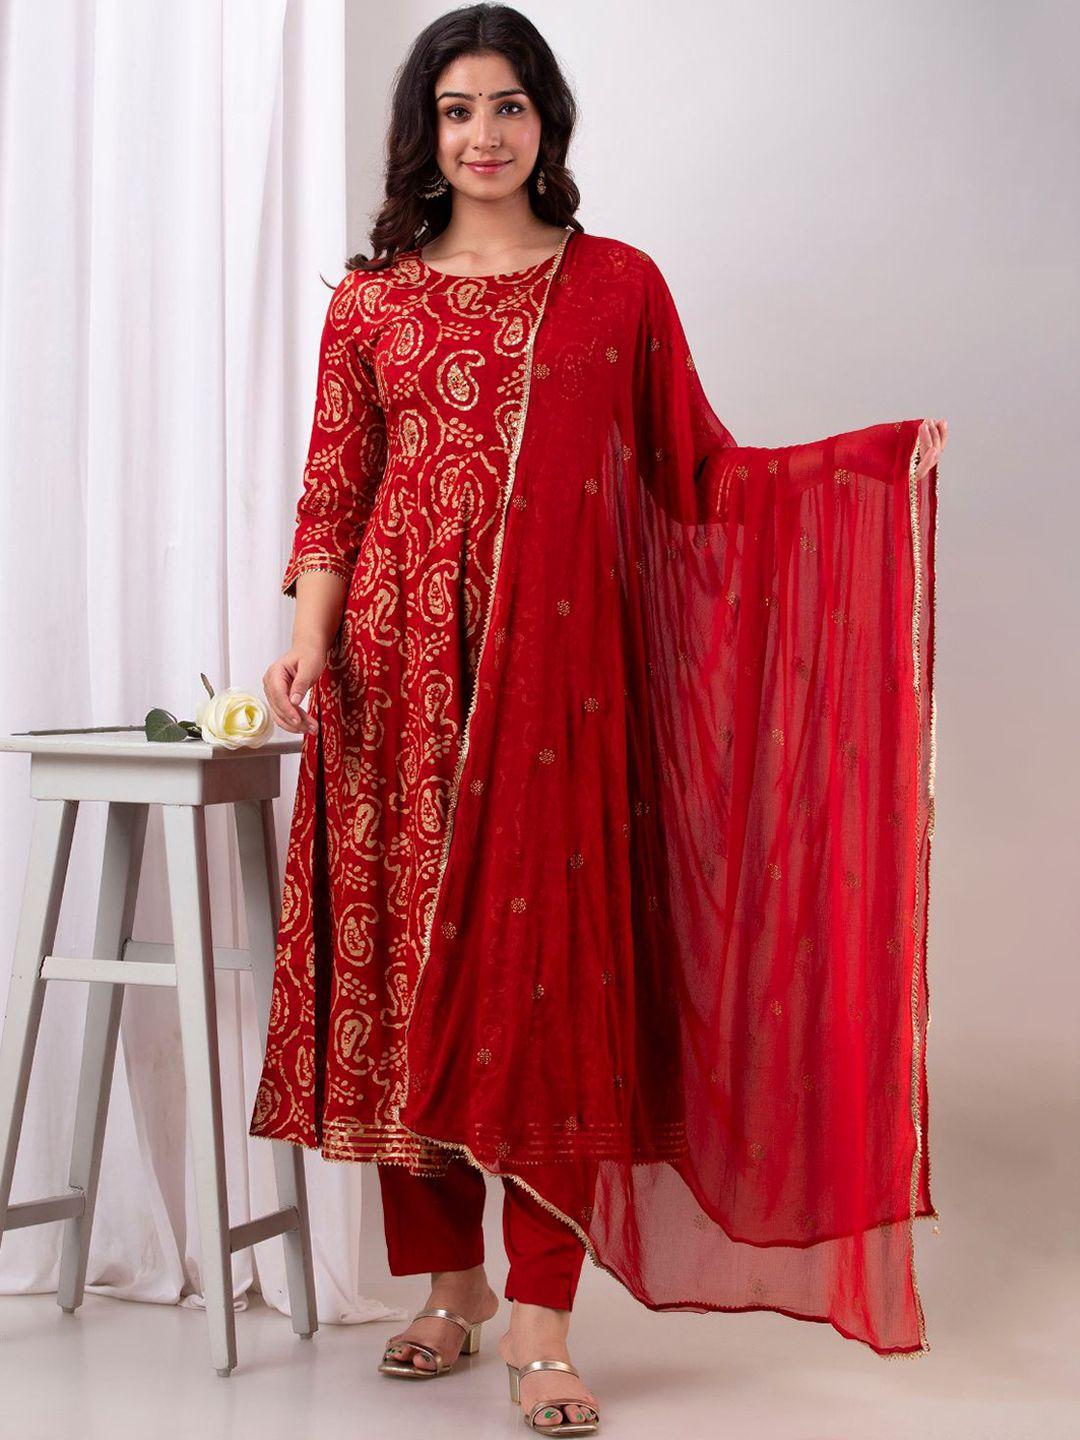 kesarya women red & beige paisley printed sequinned kurta with trouser & dupatta set